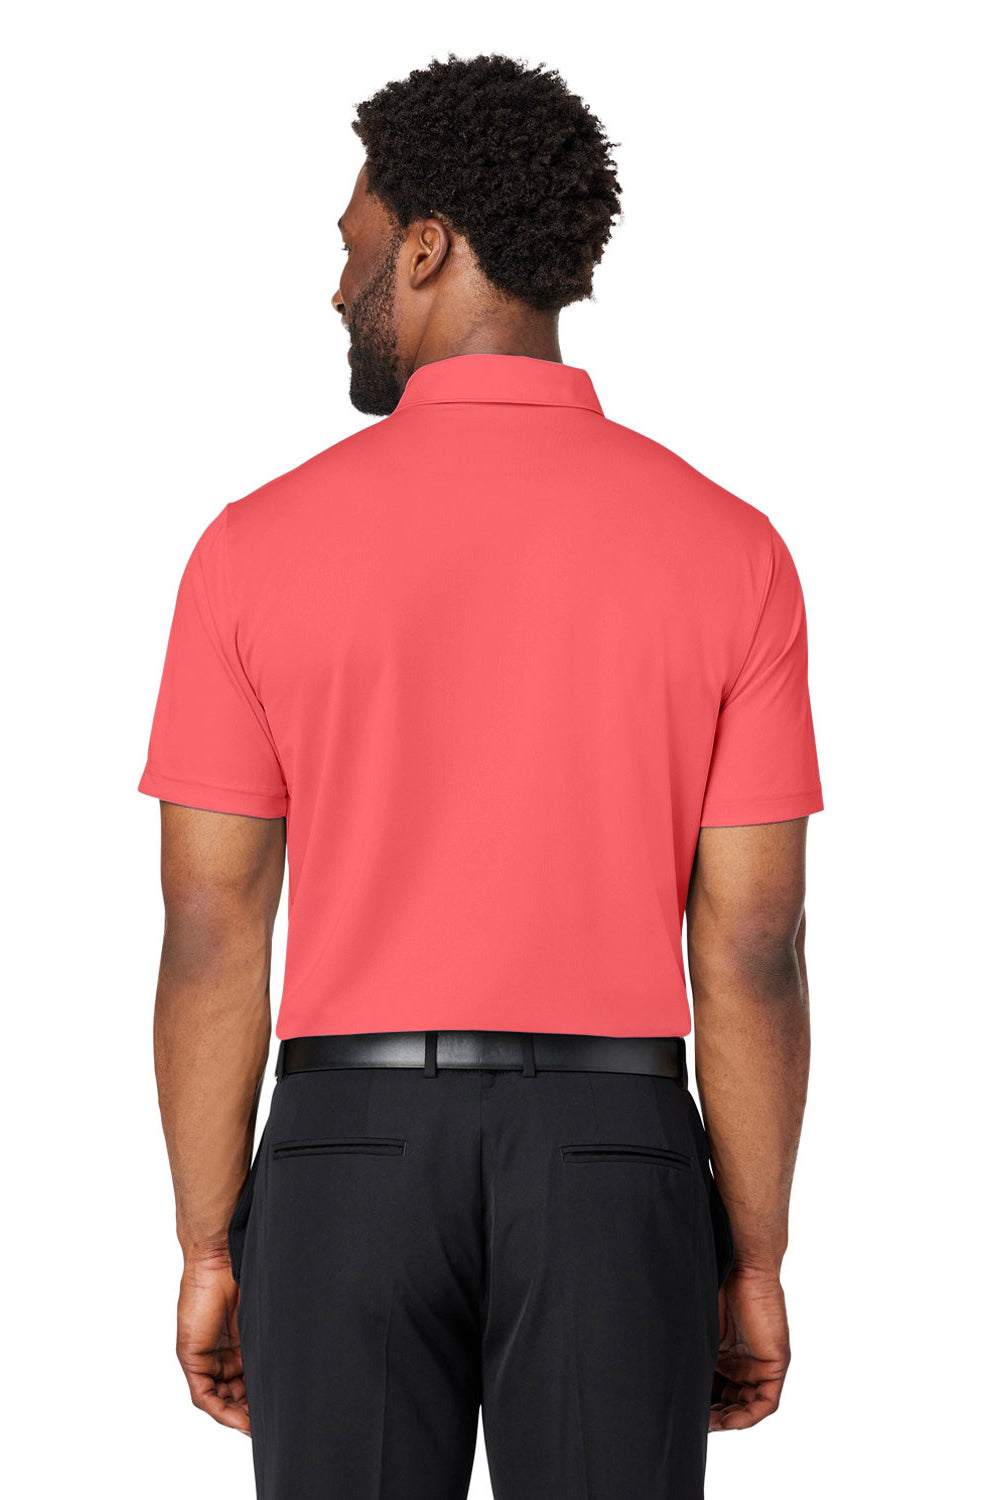 Puma 599120 Mens Gamer Short Sleeve Polo Shirt Hot Coral Back